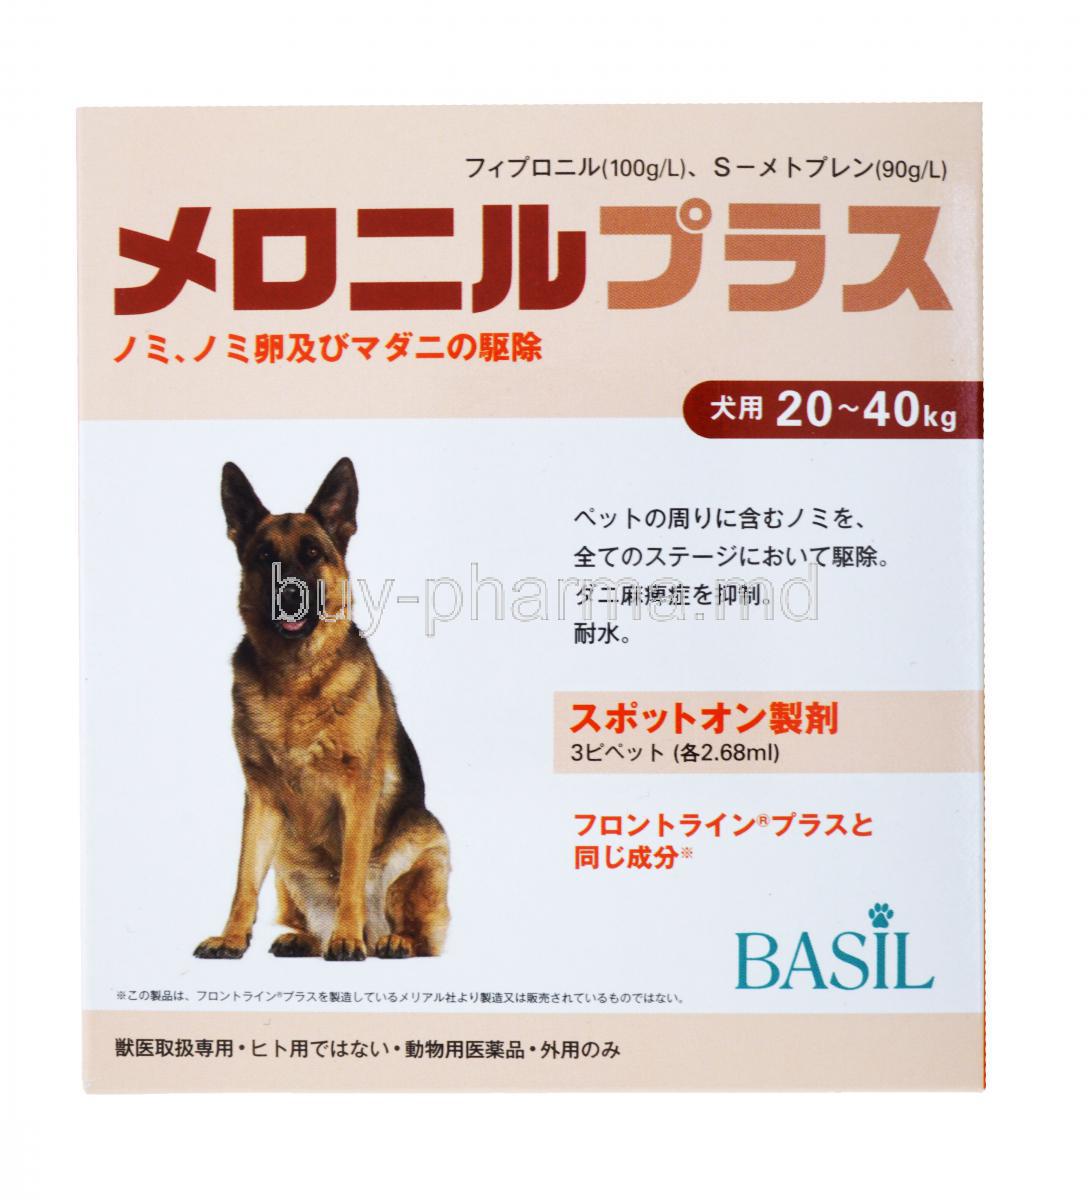 Meronil Plus For dog, Fipronil + (S)-Methoprene, 20-40Kg, Basil, 100g/L , 90g/L, Box front presentation